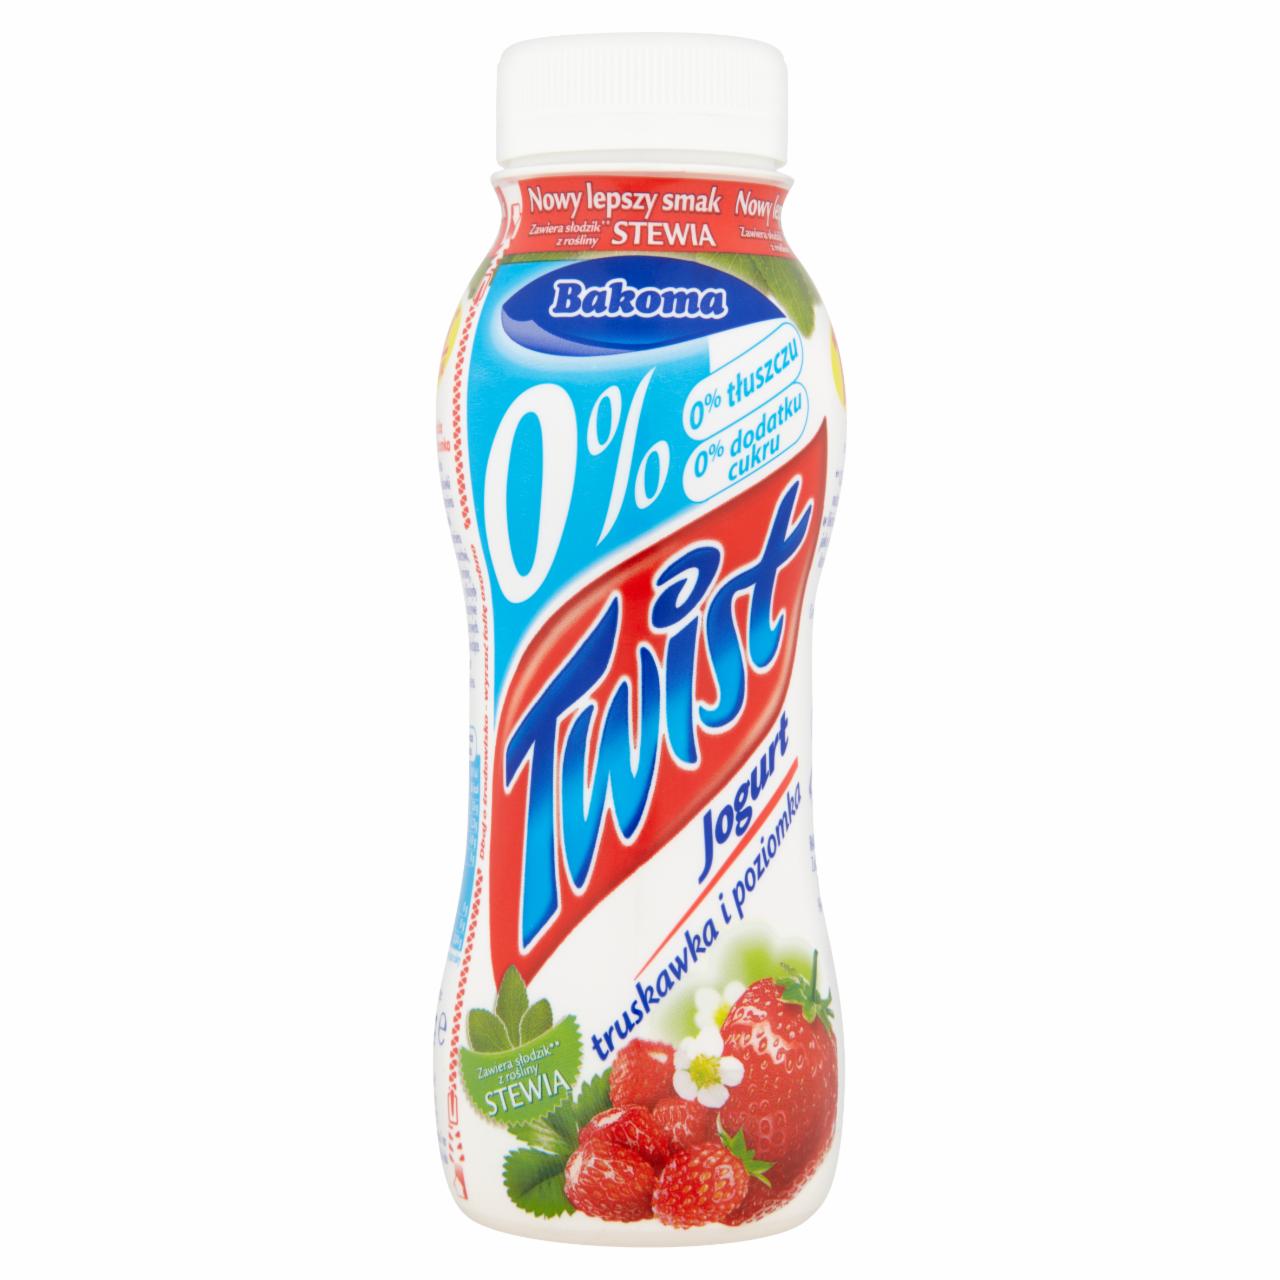 Zdjęcia - Bakoma Twist 0% Jogurt truskawka i poziomka 250 g